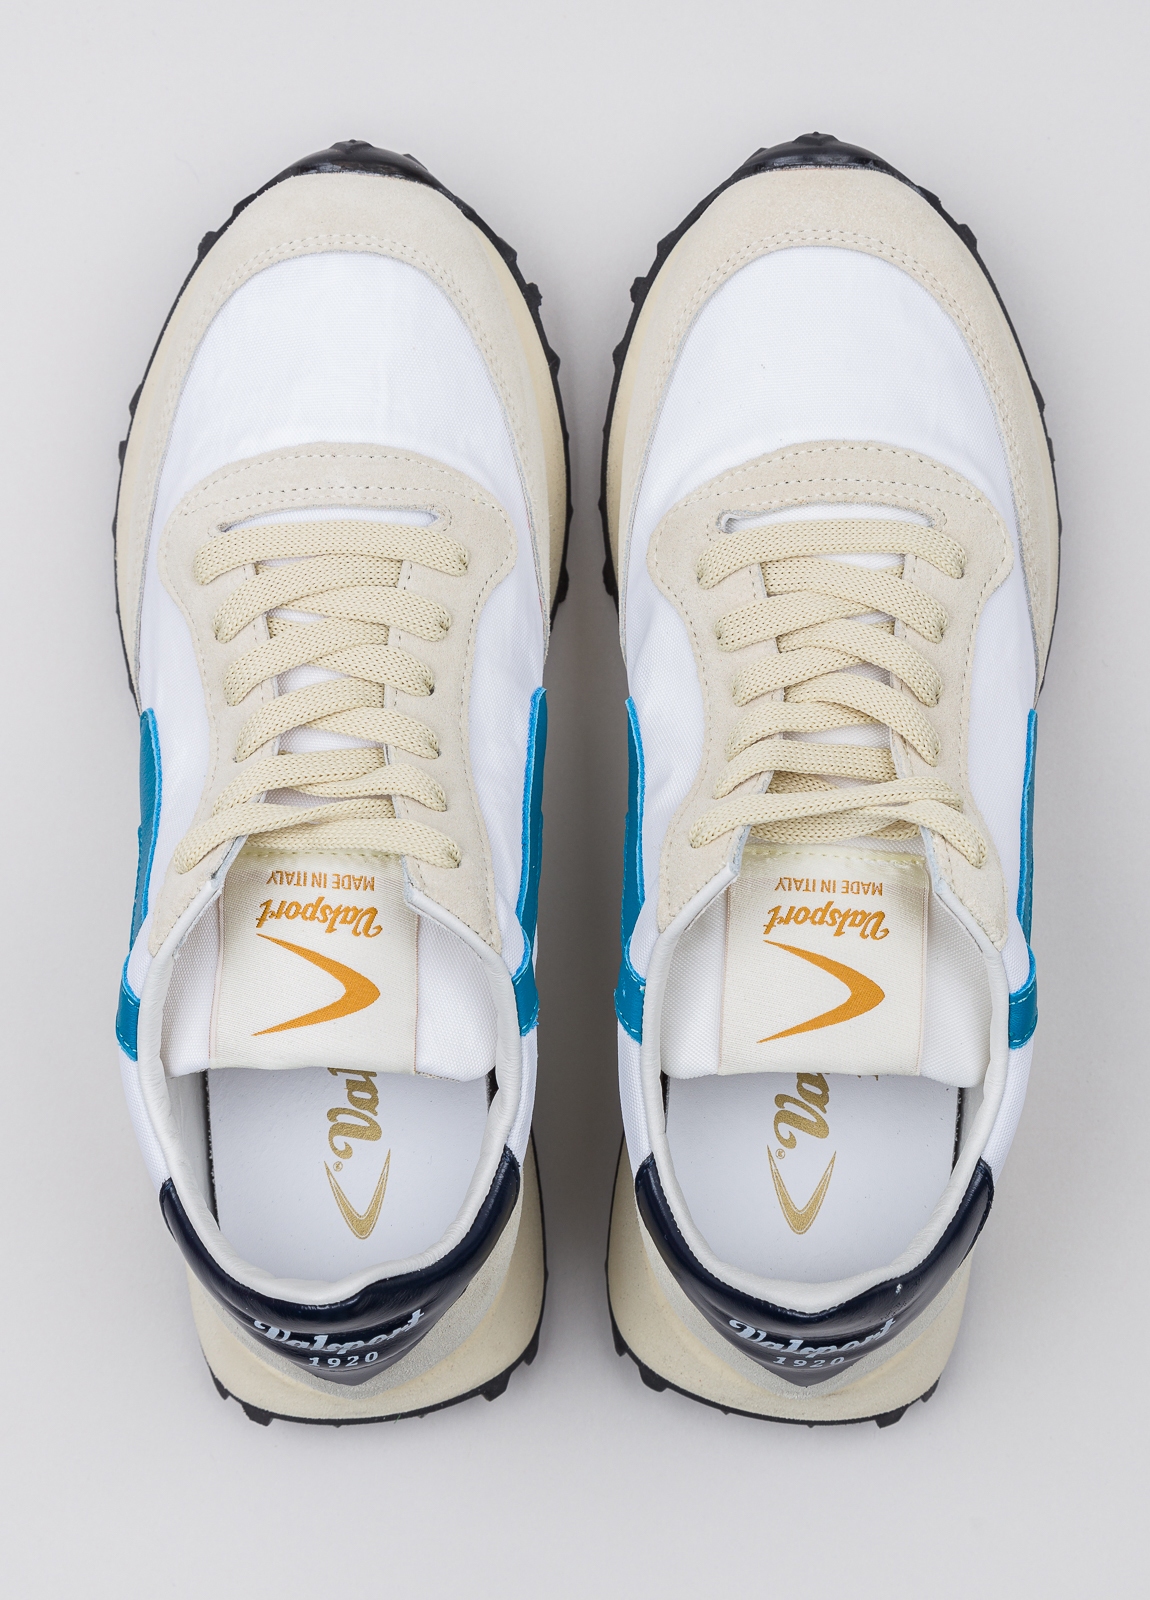 Sneakers VALSPORT blanca y beige con detalles azul y negro - Ítem1